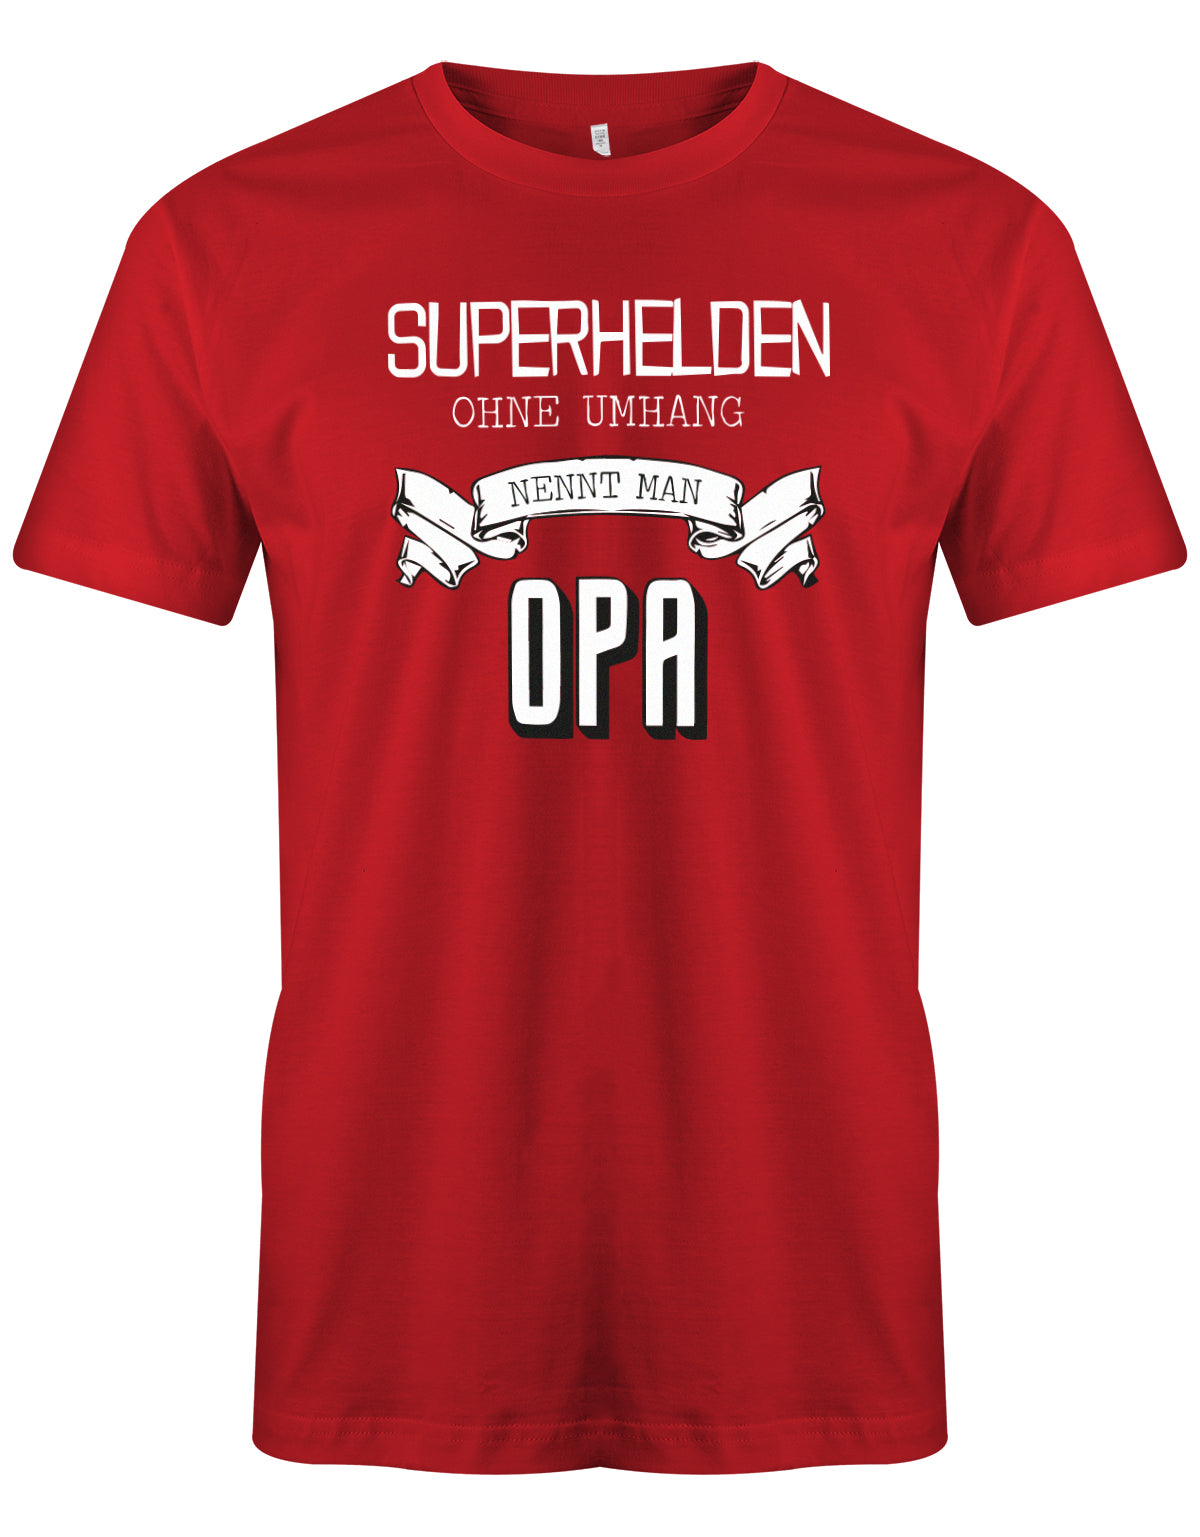 Opa T-Shirt – Superhelden ohne Umhang nennt man Opa Rot